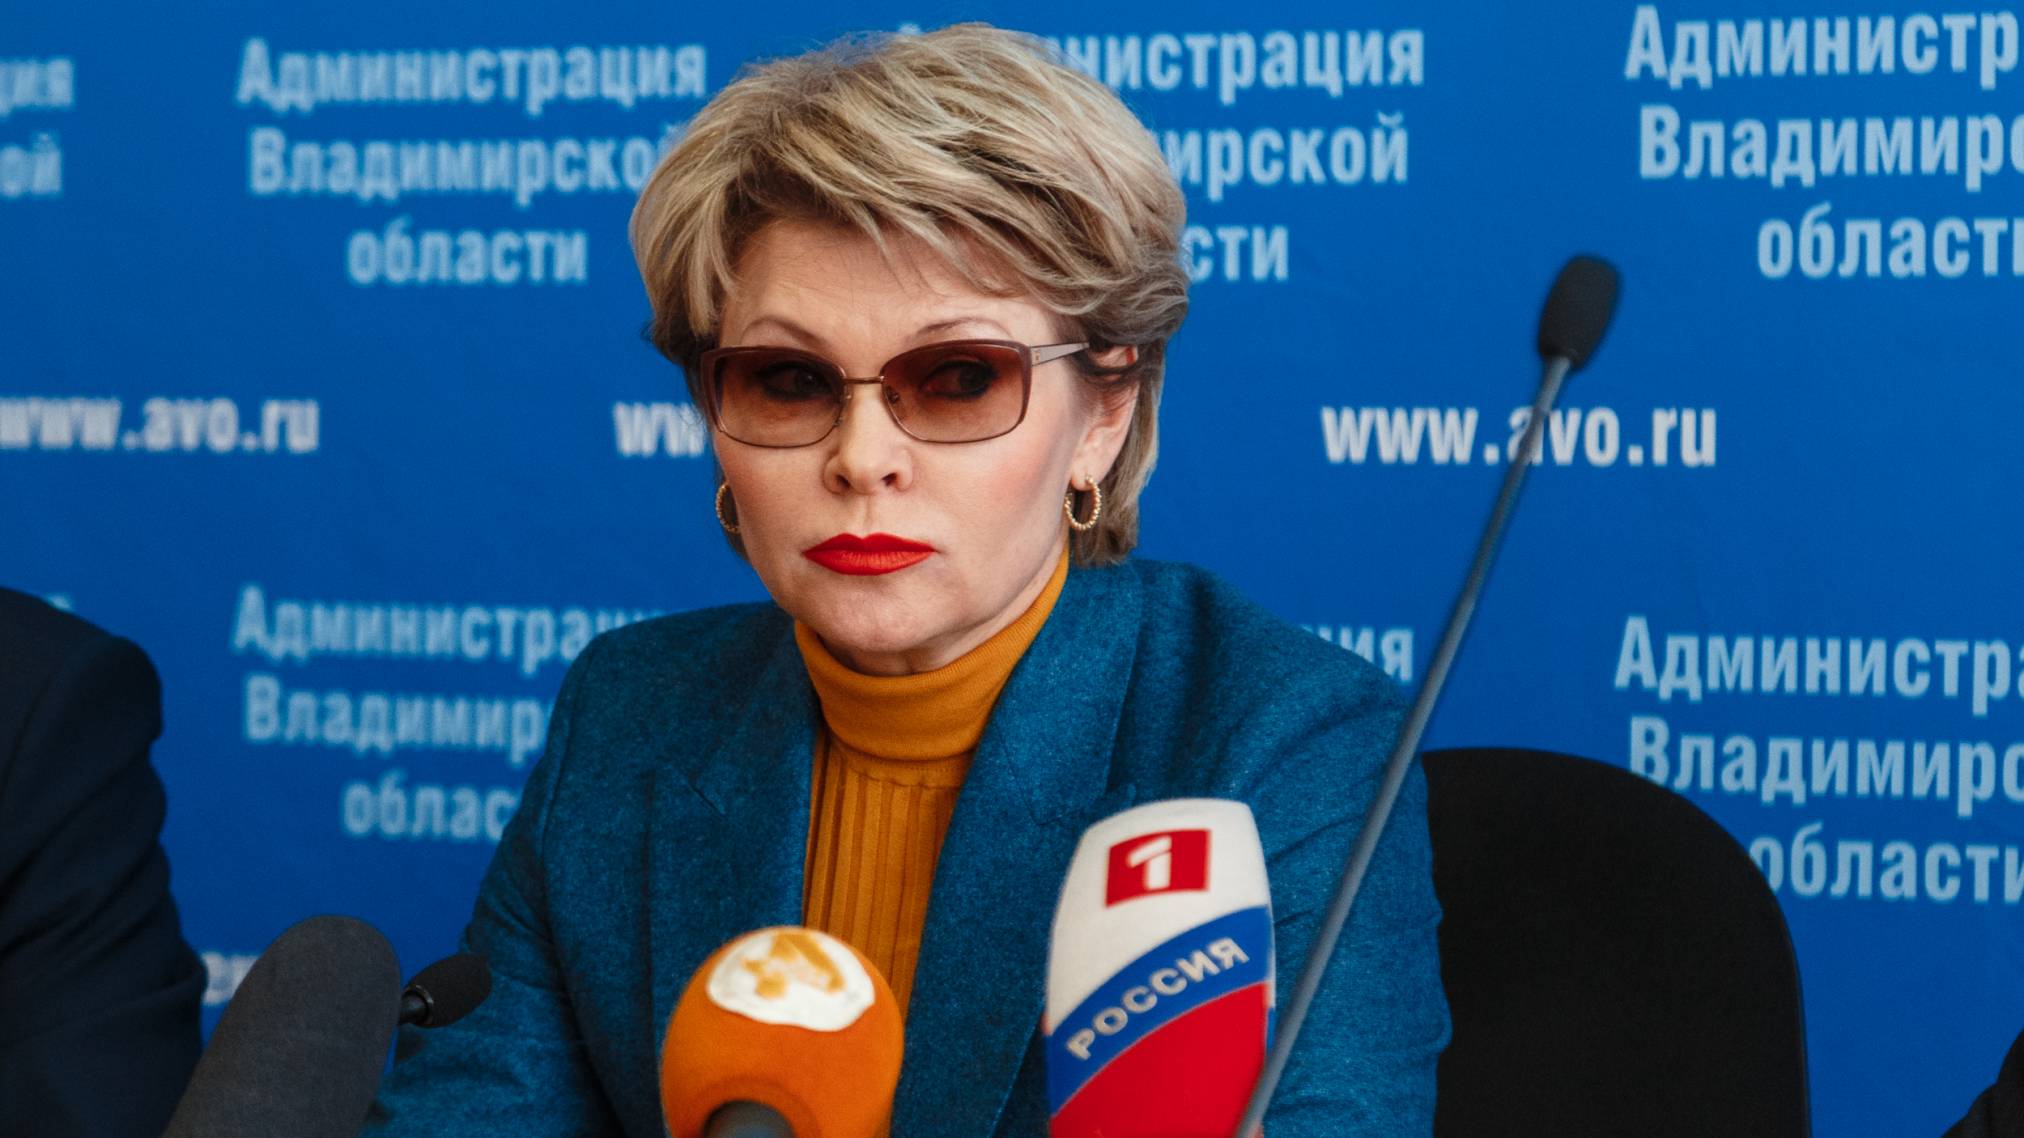 Бывшему вице-губернатору Владимирской области Елене Мазанько вынесли новый приговор за взятки